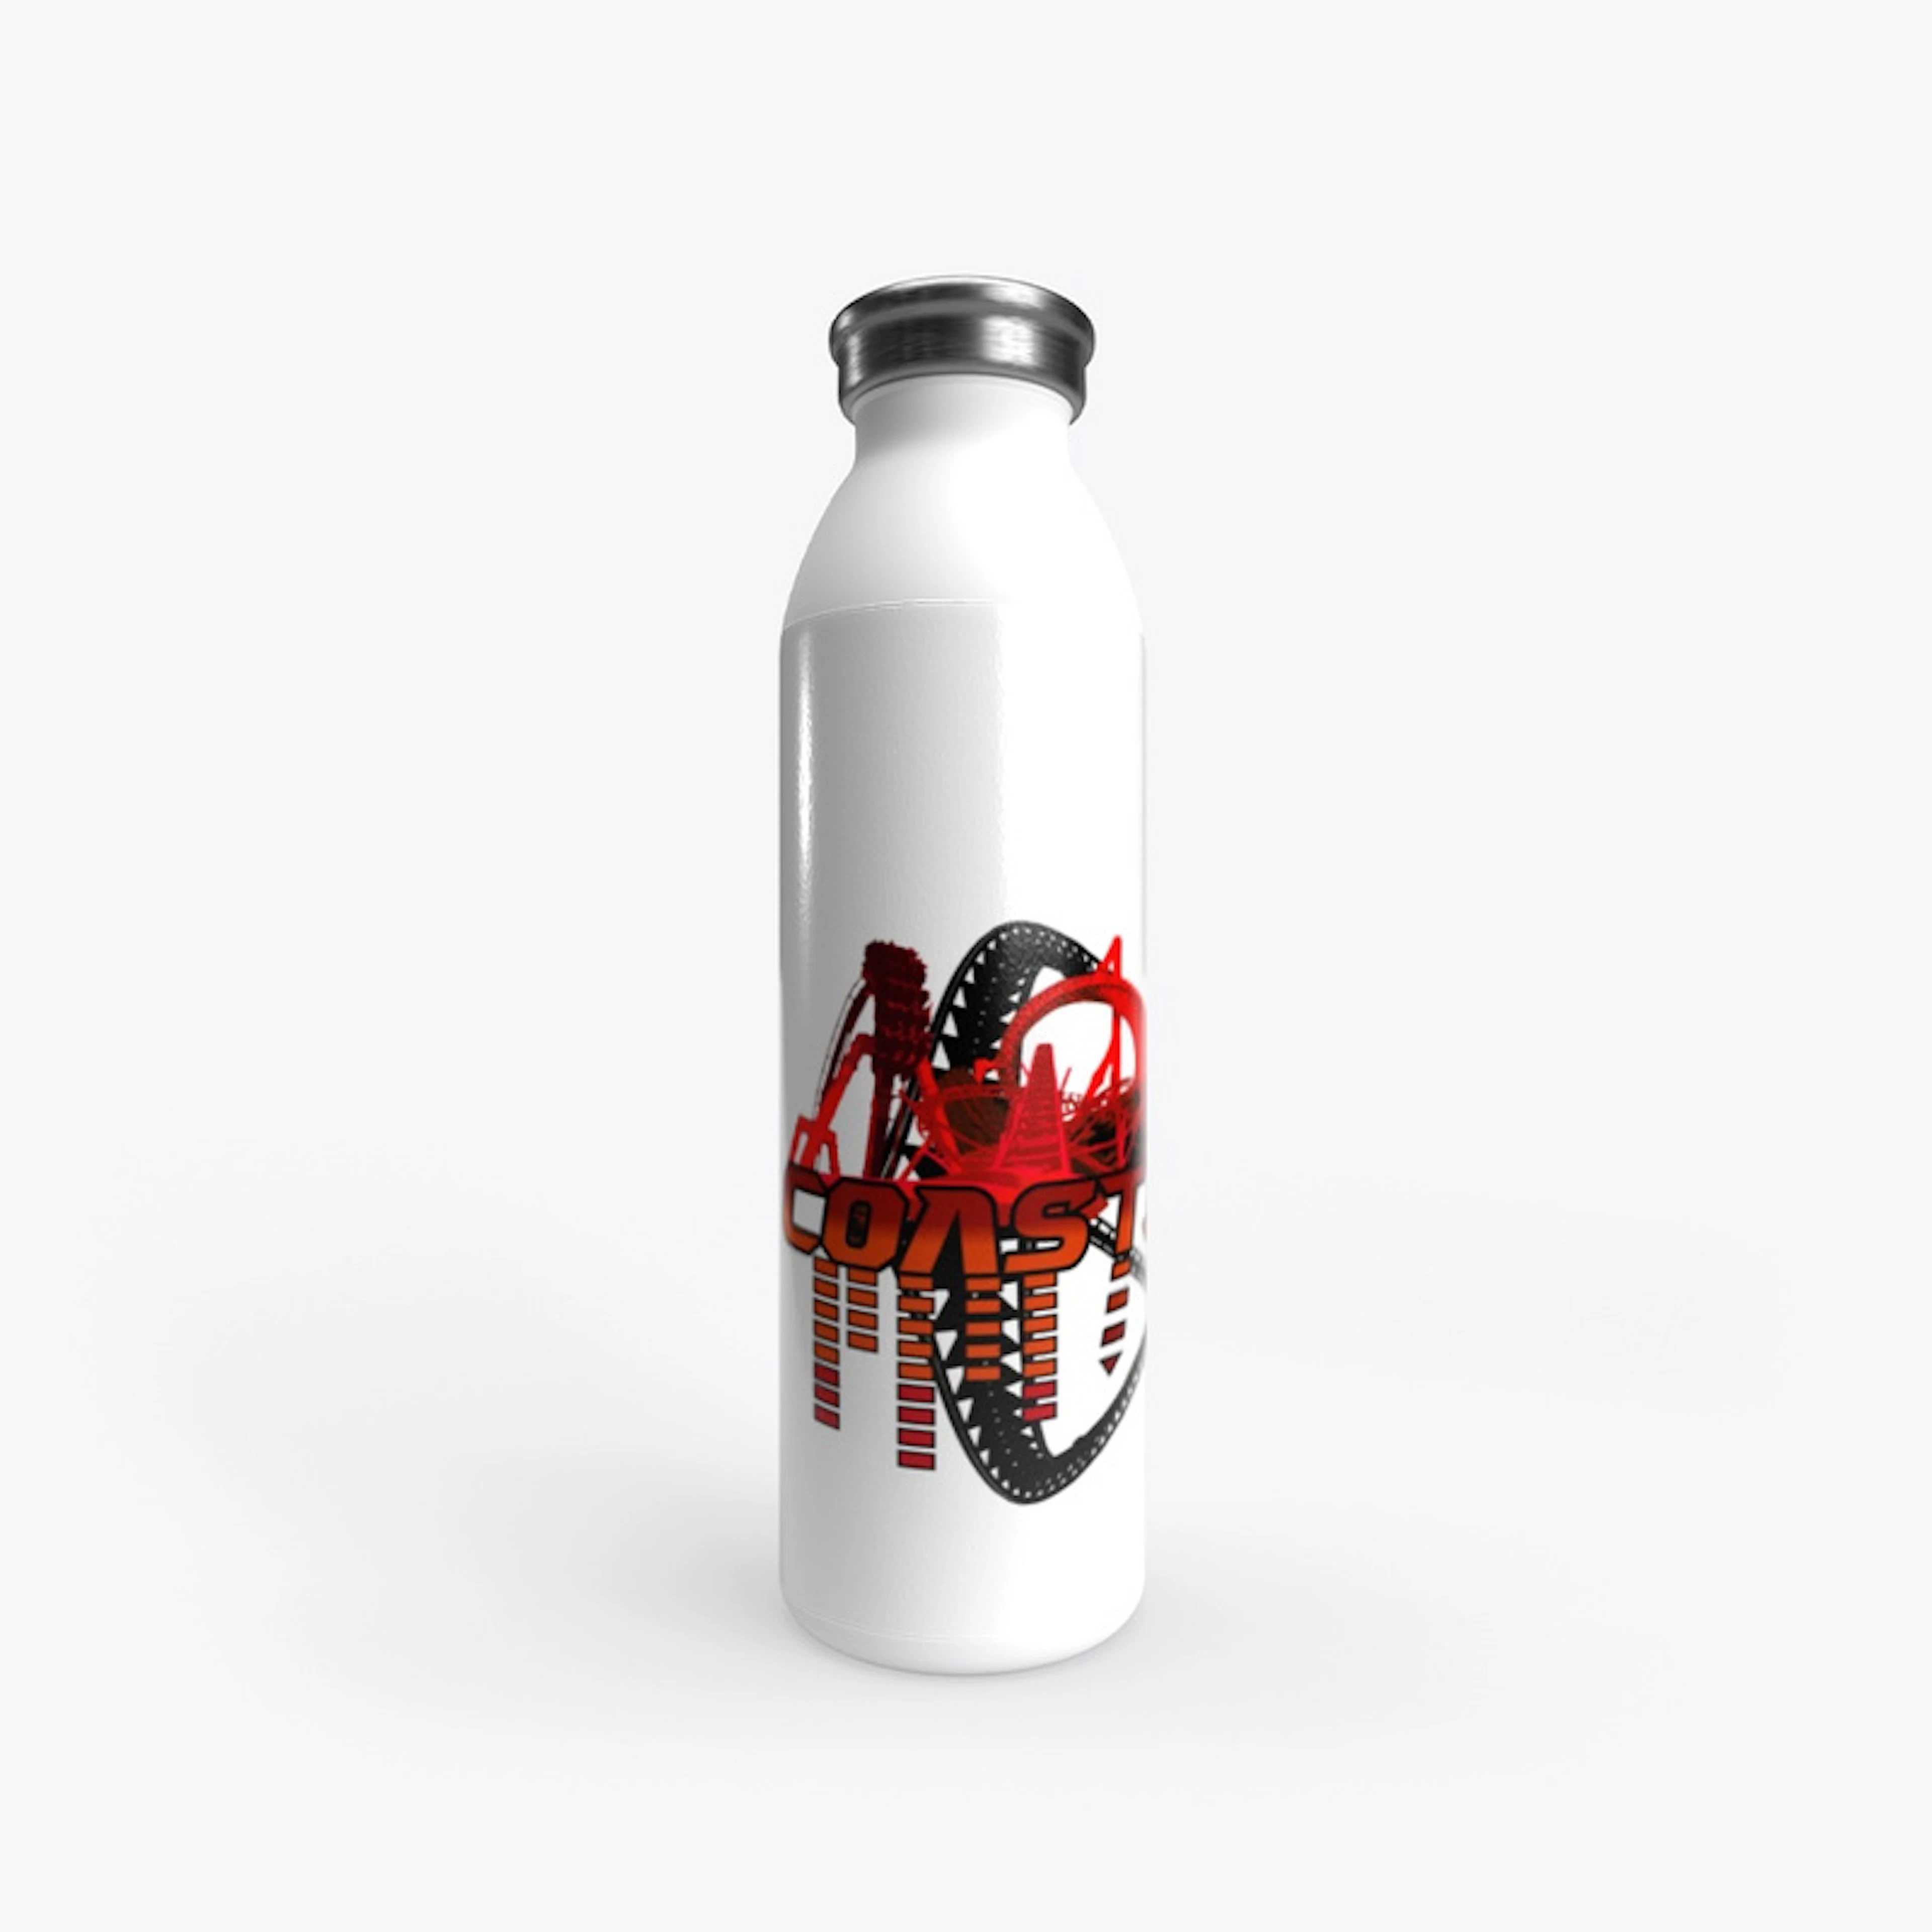 Coasterwolf stainless water bottle